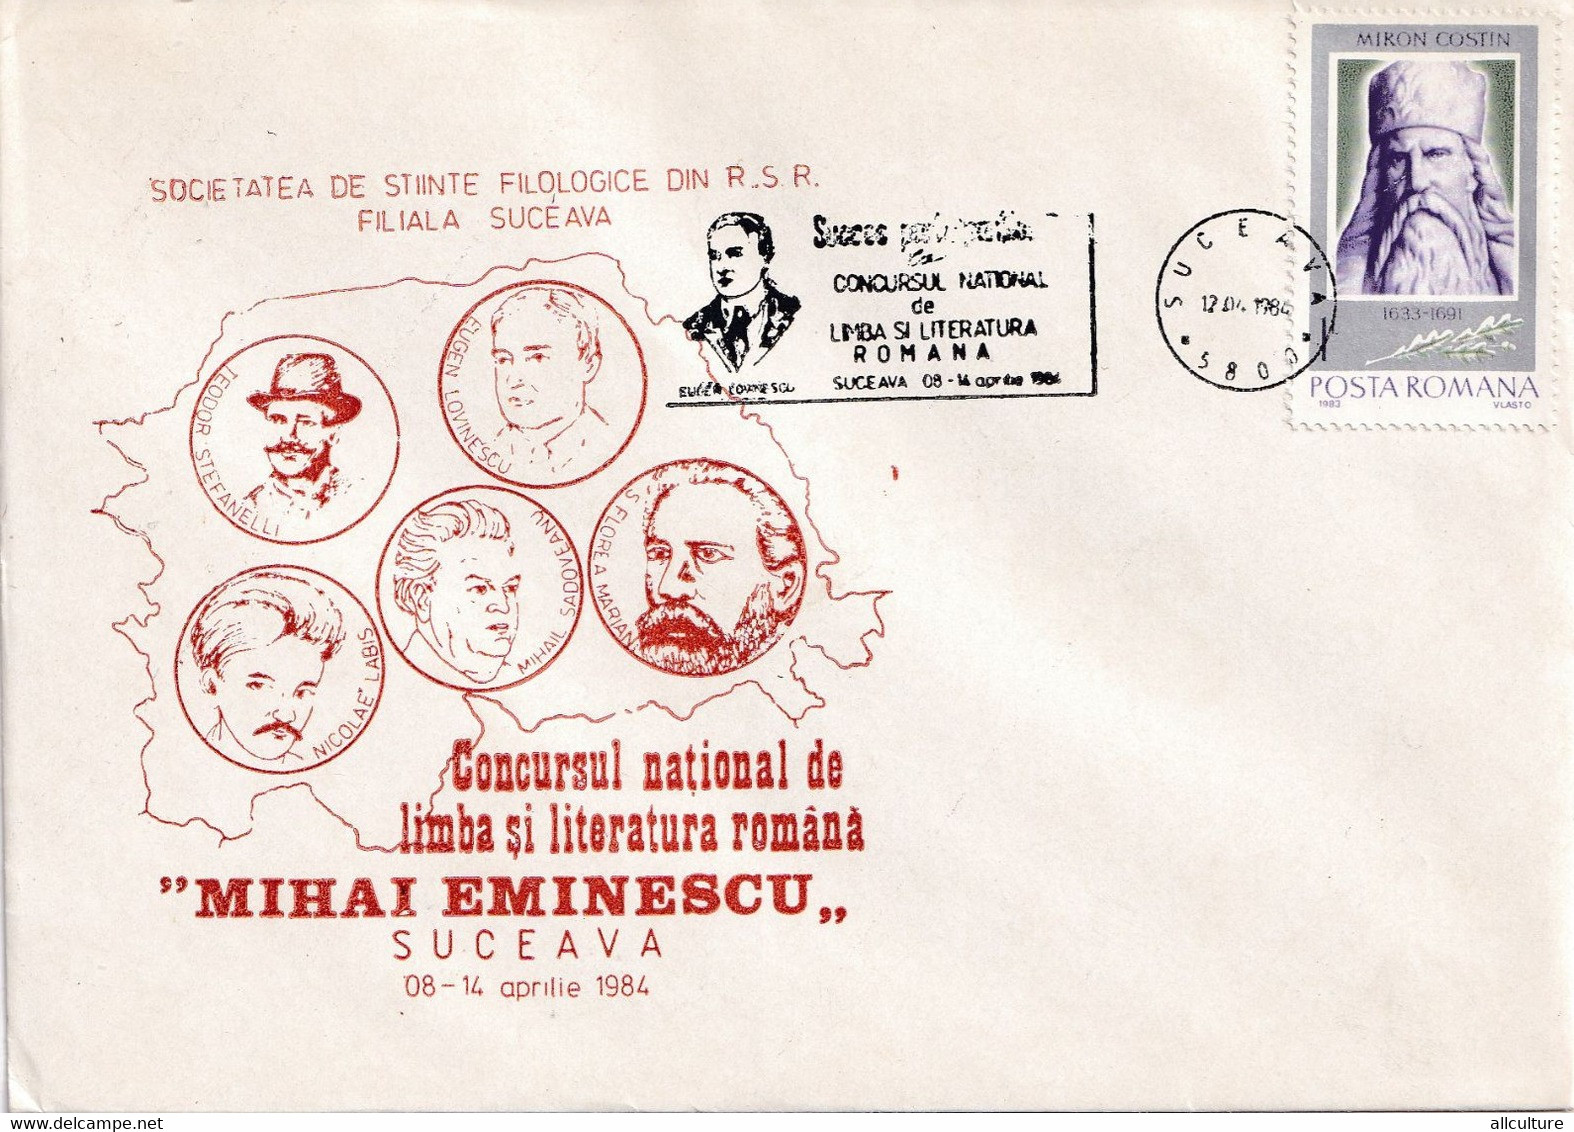 A2824 - Societatea De Stiinte Filologice, Concursul National De Literatura Romana Mihai Eminescu, Suceava 1984  Romania - Storia Postale